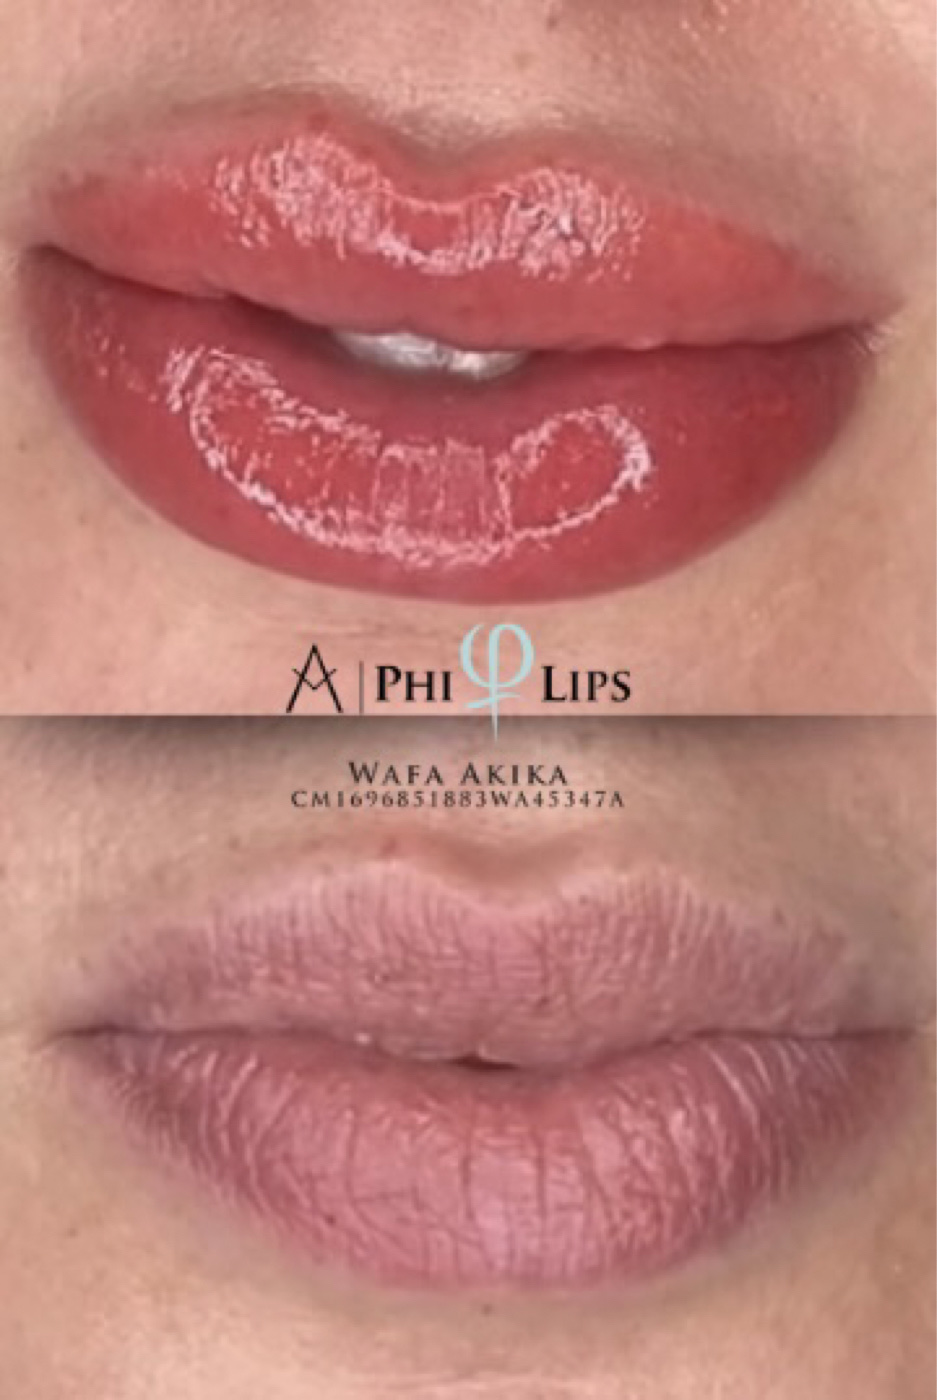 Nouveau chez Wawbrowz ! Candy Lips 💋

Des lèvres définies et ultra Juicy ❣️

